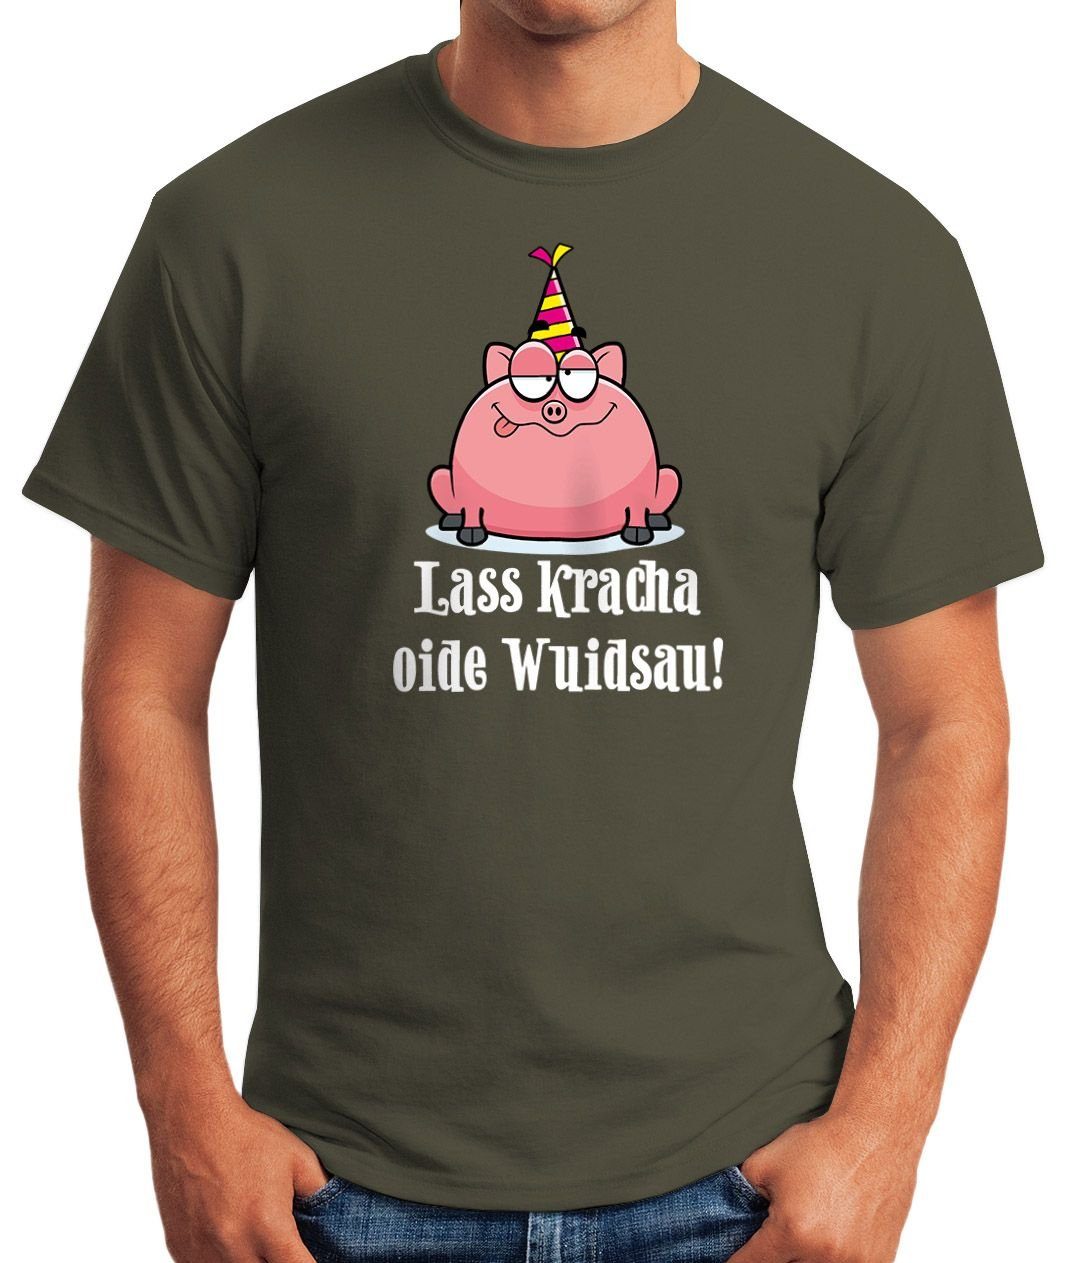 MoonWorks Print-Shirt Herren Print grün kracha T-Shirt Wuidsau Geschenk Schwein mit Fun-Shirt Geburtstag Spruch oide Lass Moonworks®